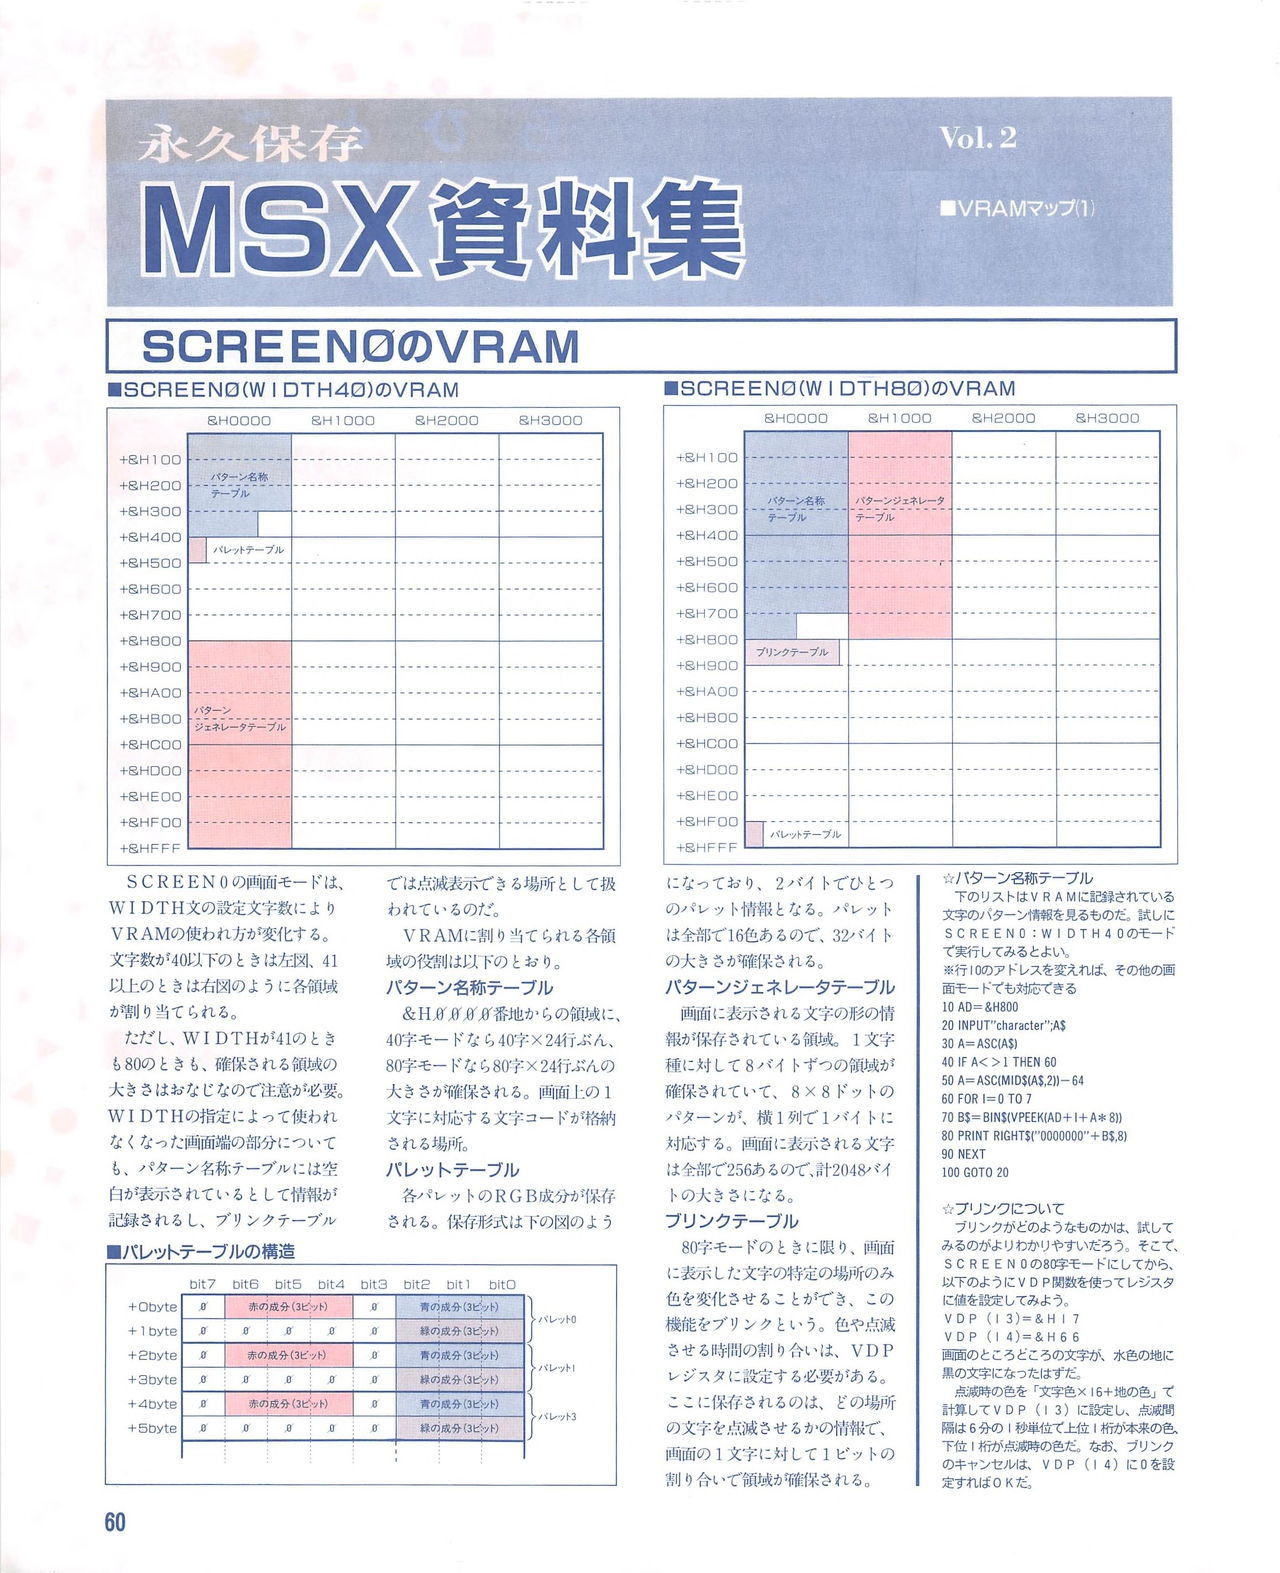 MSX Fan 1995-02 59